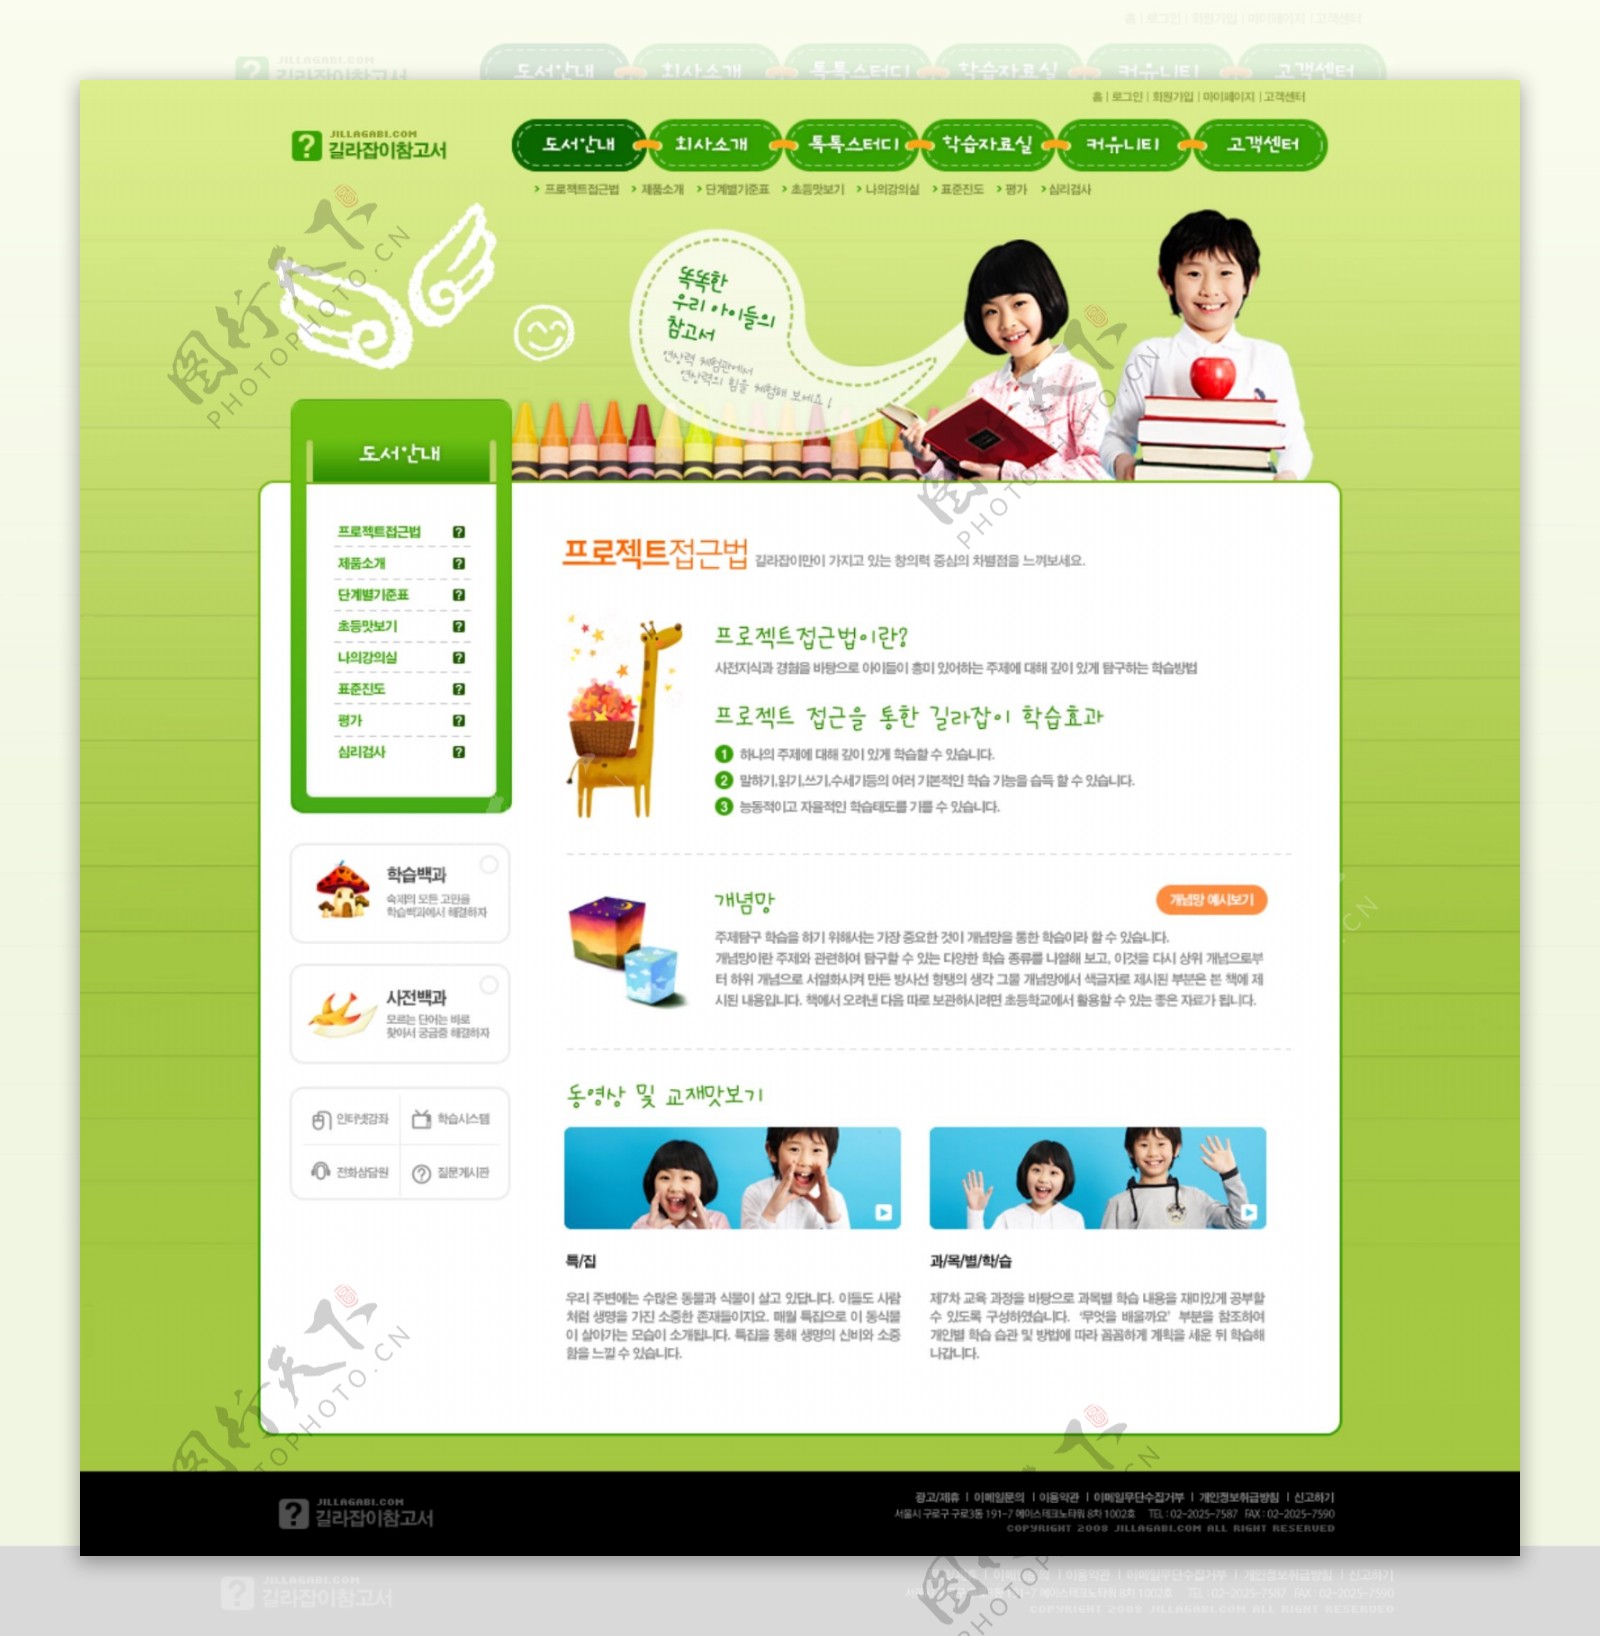 韩国学习类教育行业网站界面